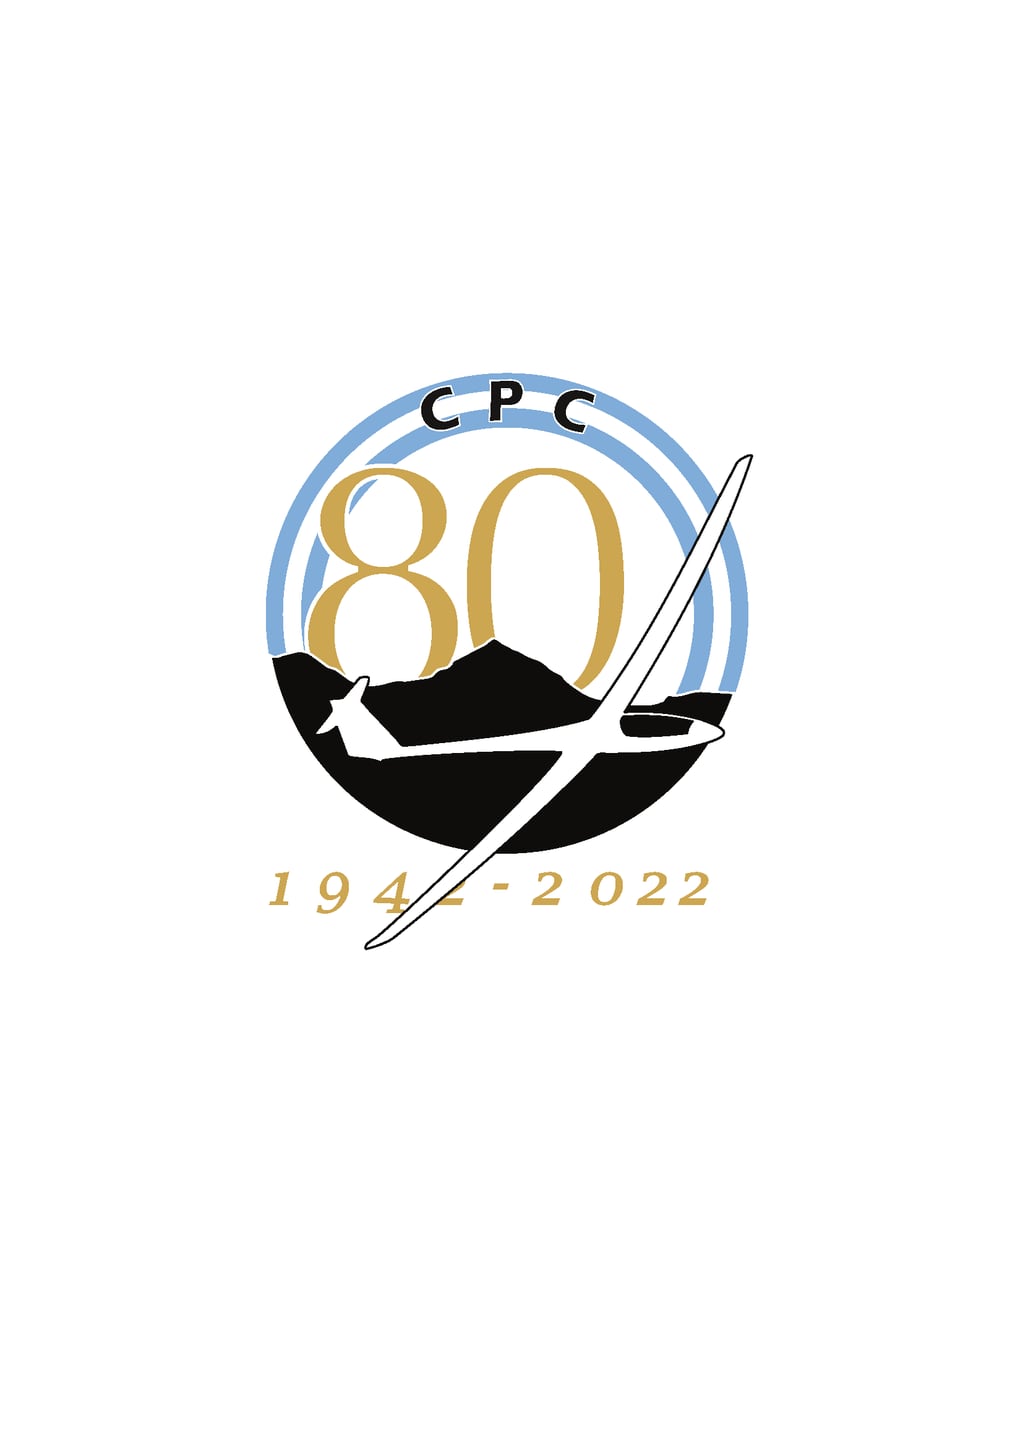 El Club de Planeadores Córdoba cumple 80 años.